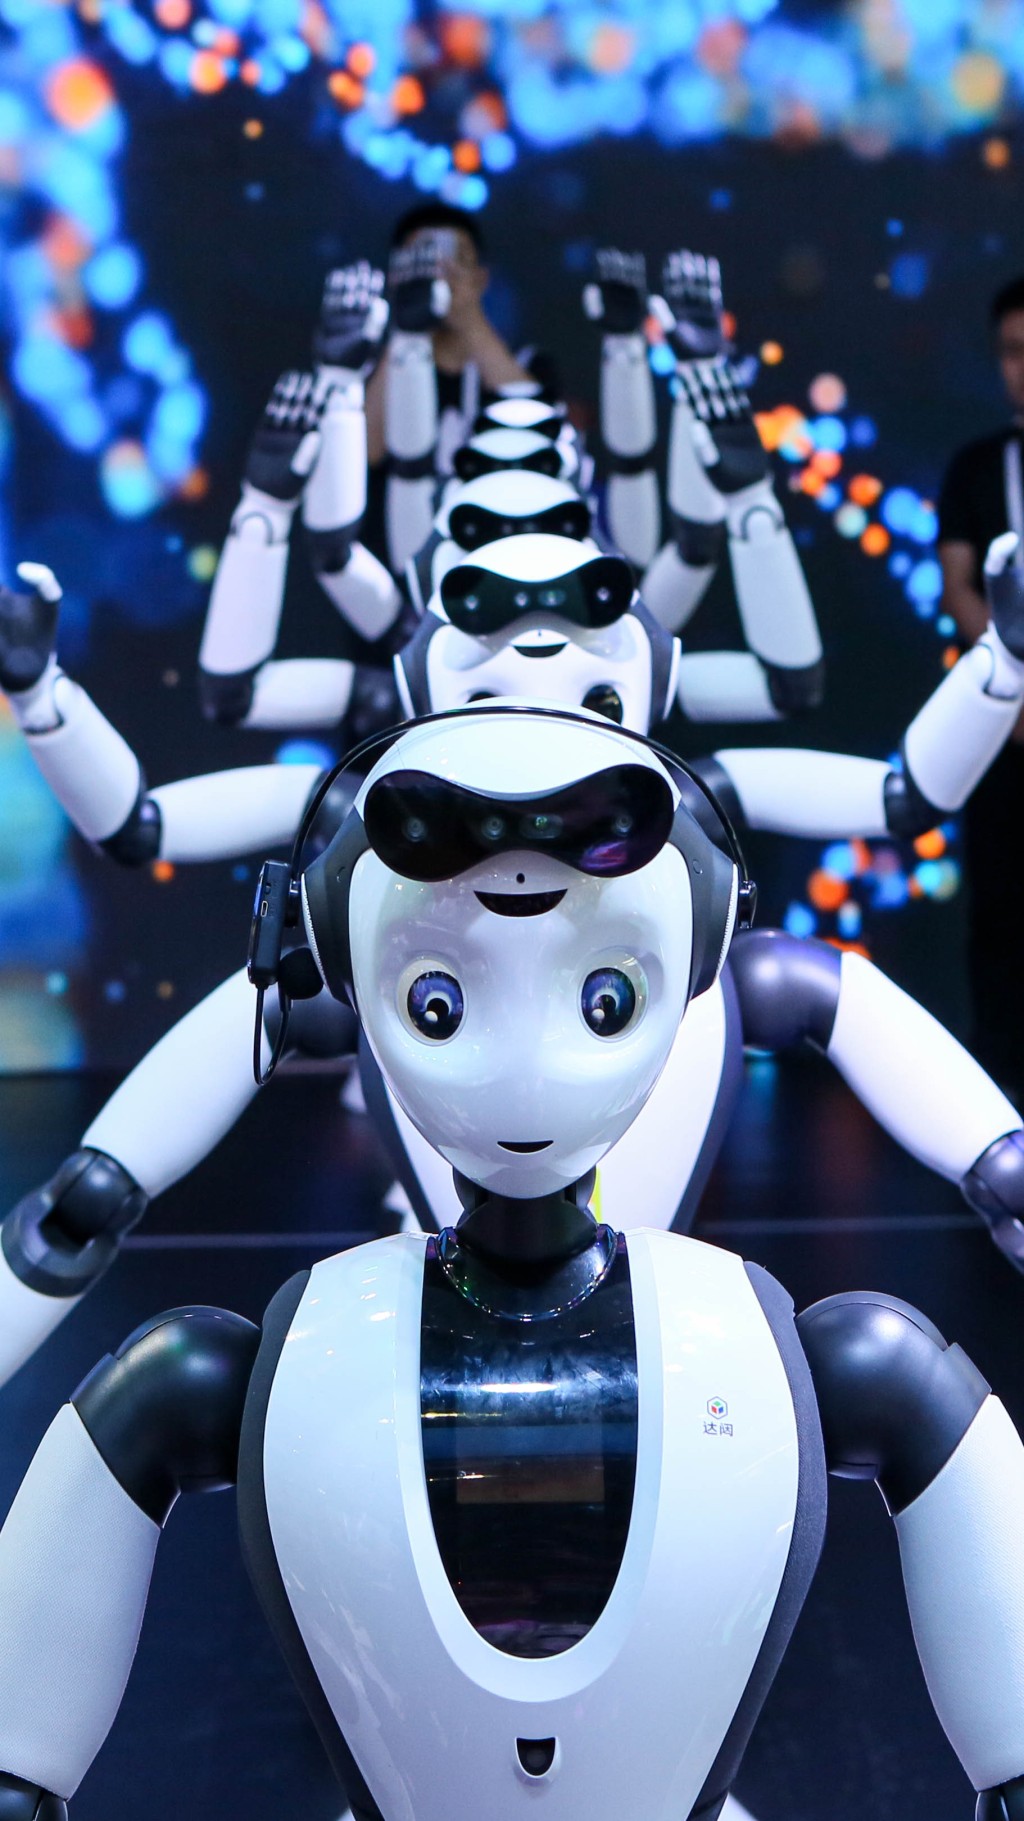 上海已连续成功举办六届世界人工智能大会，图为去届情况。新华社